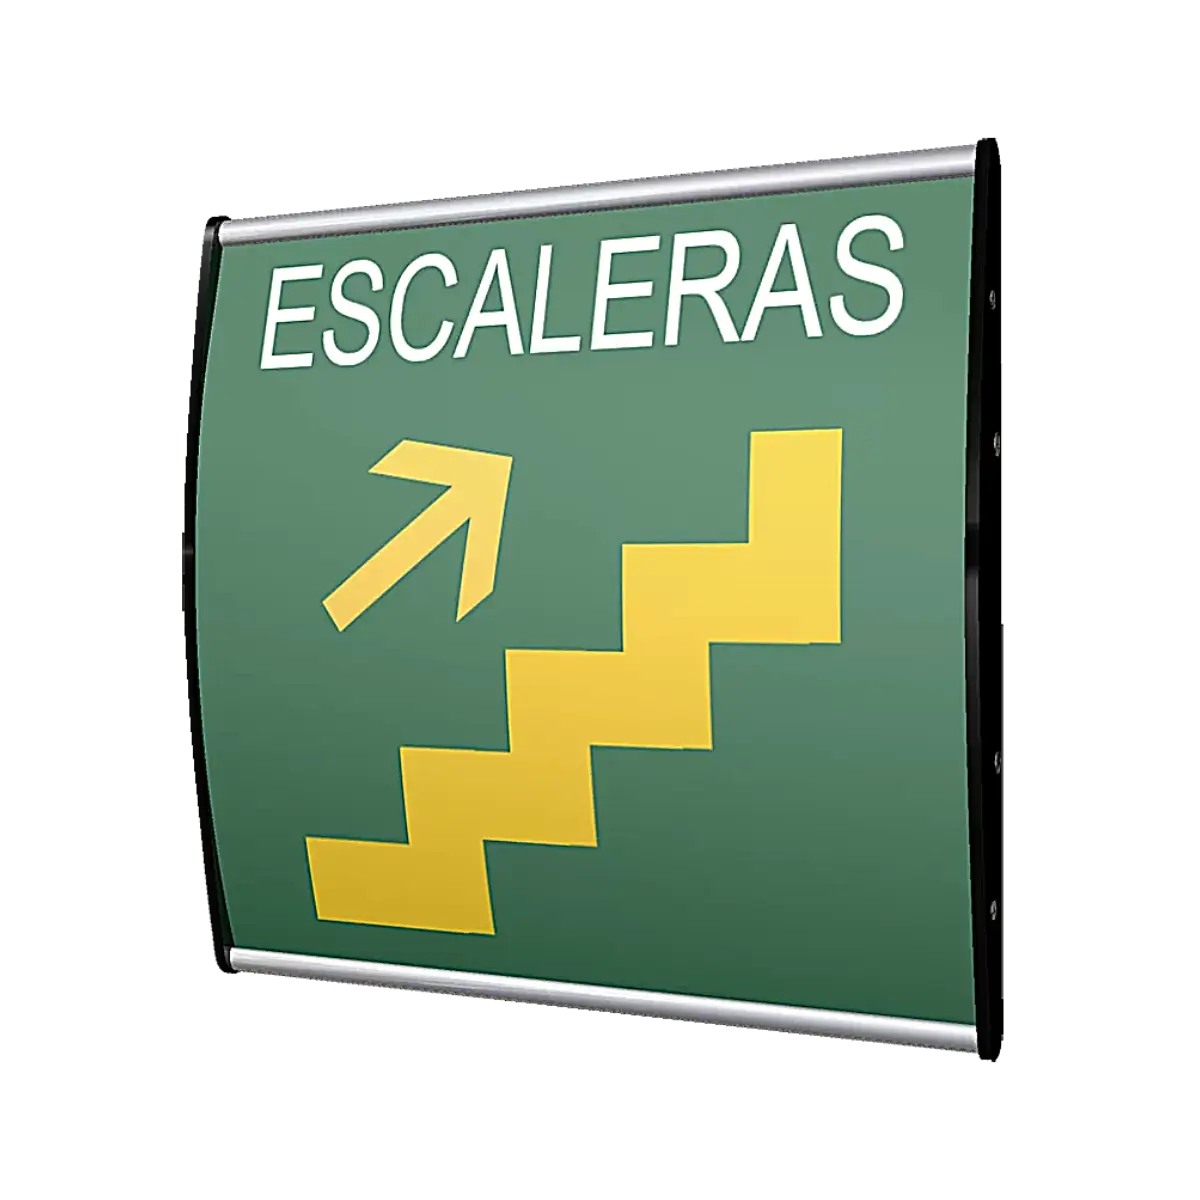 El señalamiento de escaleras, en su formato premium, otorga una mayor y más elegante vista hacia el letrero que indica una ruta de escape